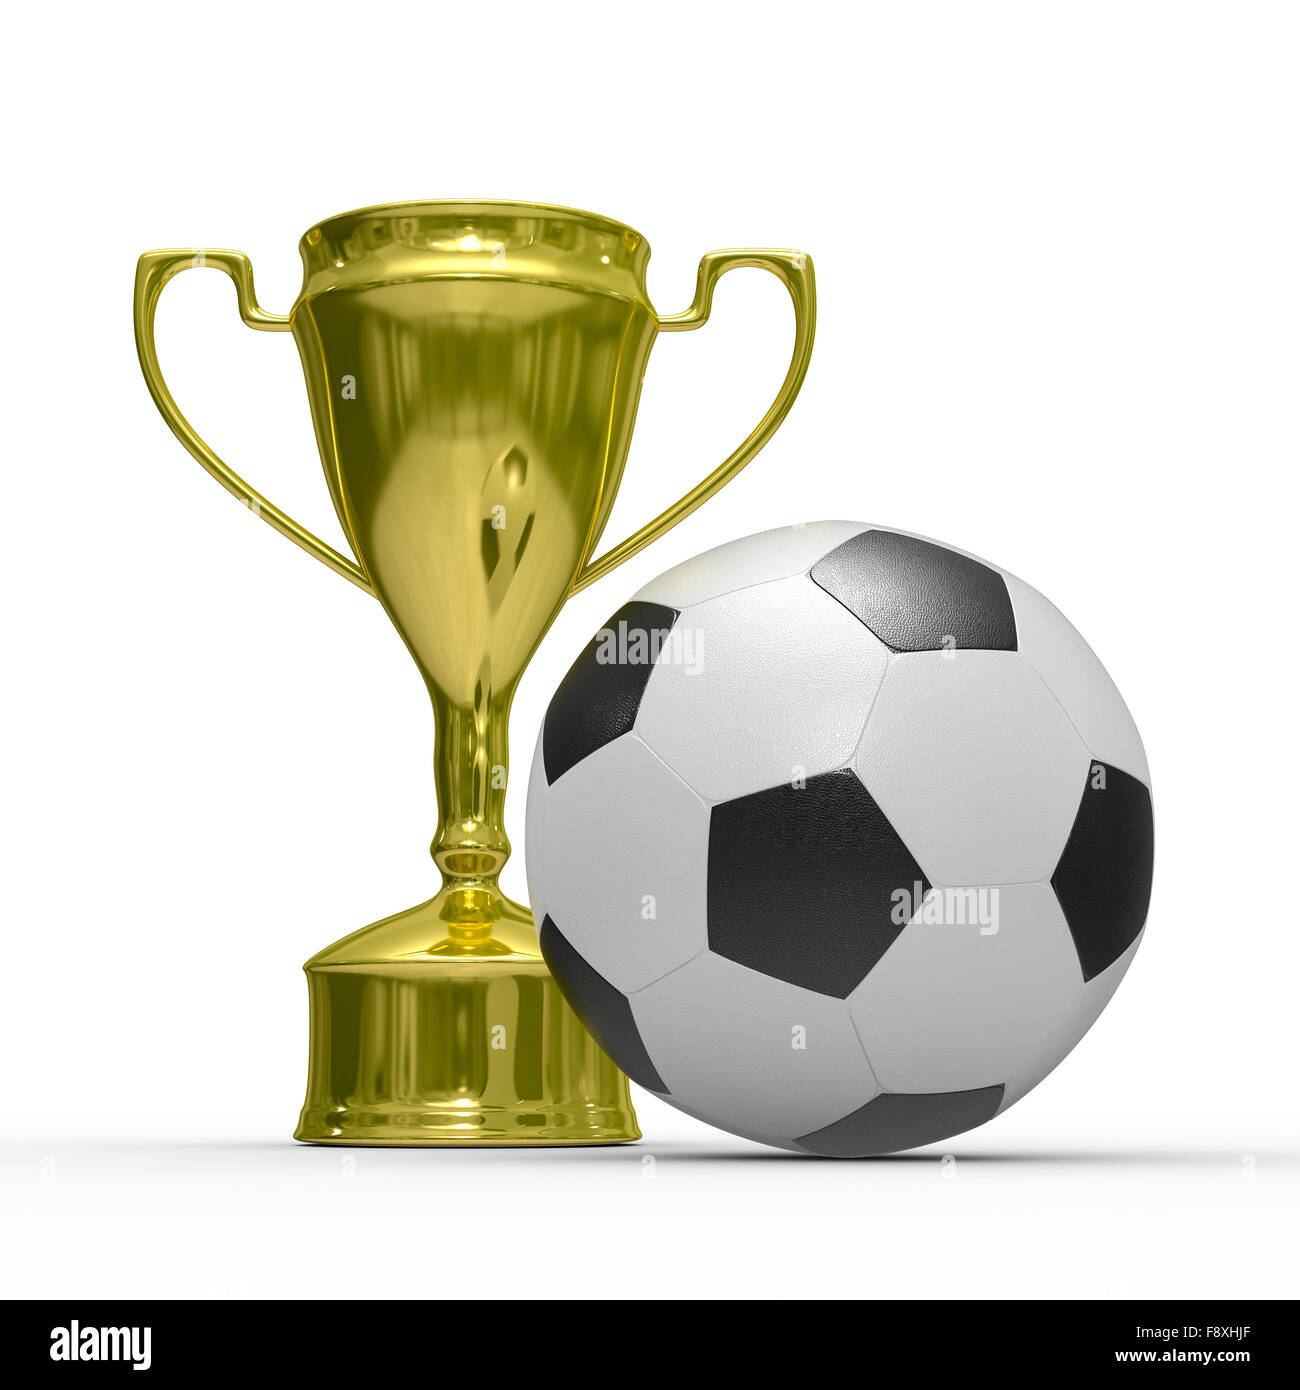 Trophée Coupe, Avec Un Ballon De Football Américain Au Sommet. Tout En Or,  Avec Sous-sol Noir. Banque D'Images et Photos Libres De Droits. Image  19918633